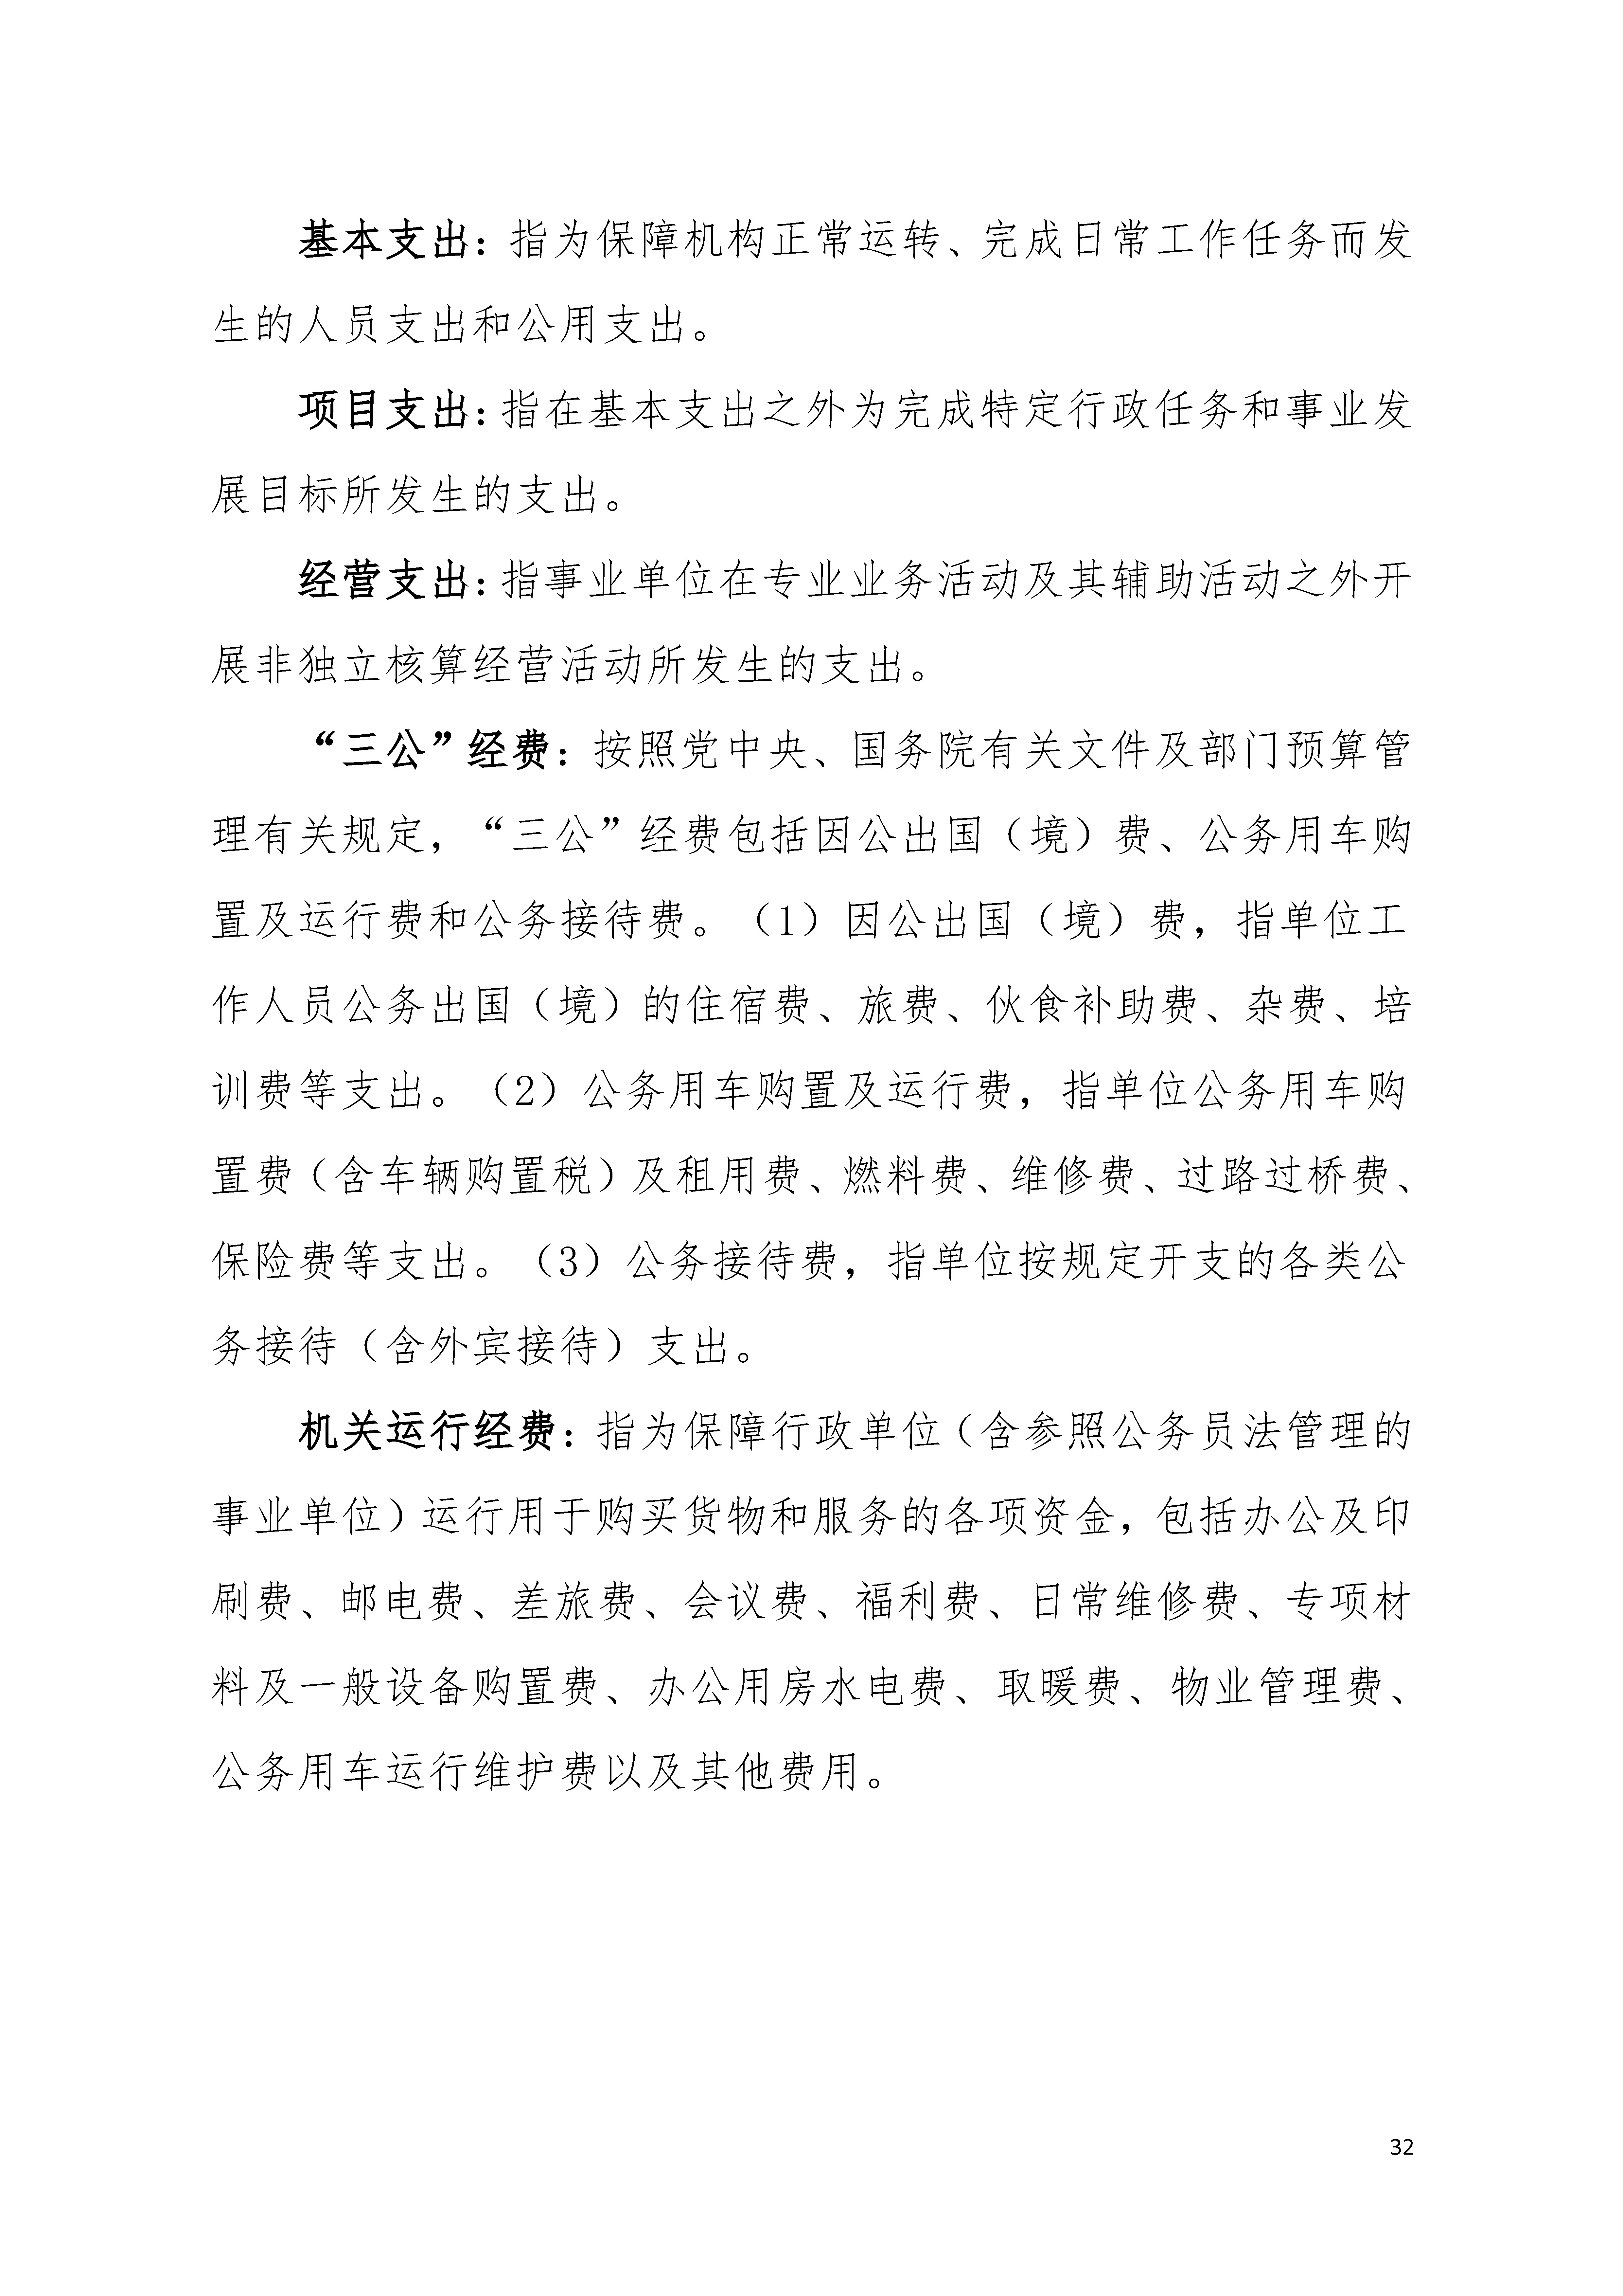 2020年广东省残疾人康复中心部门决算_页面_32.jpg